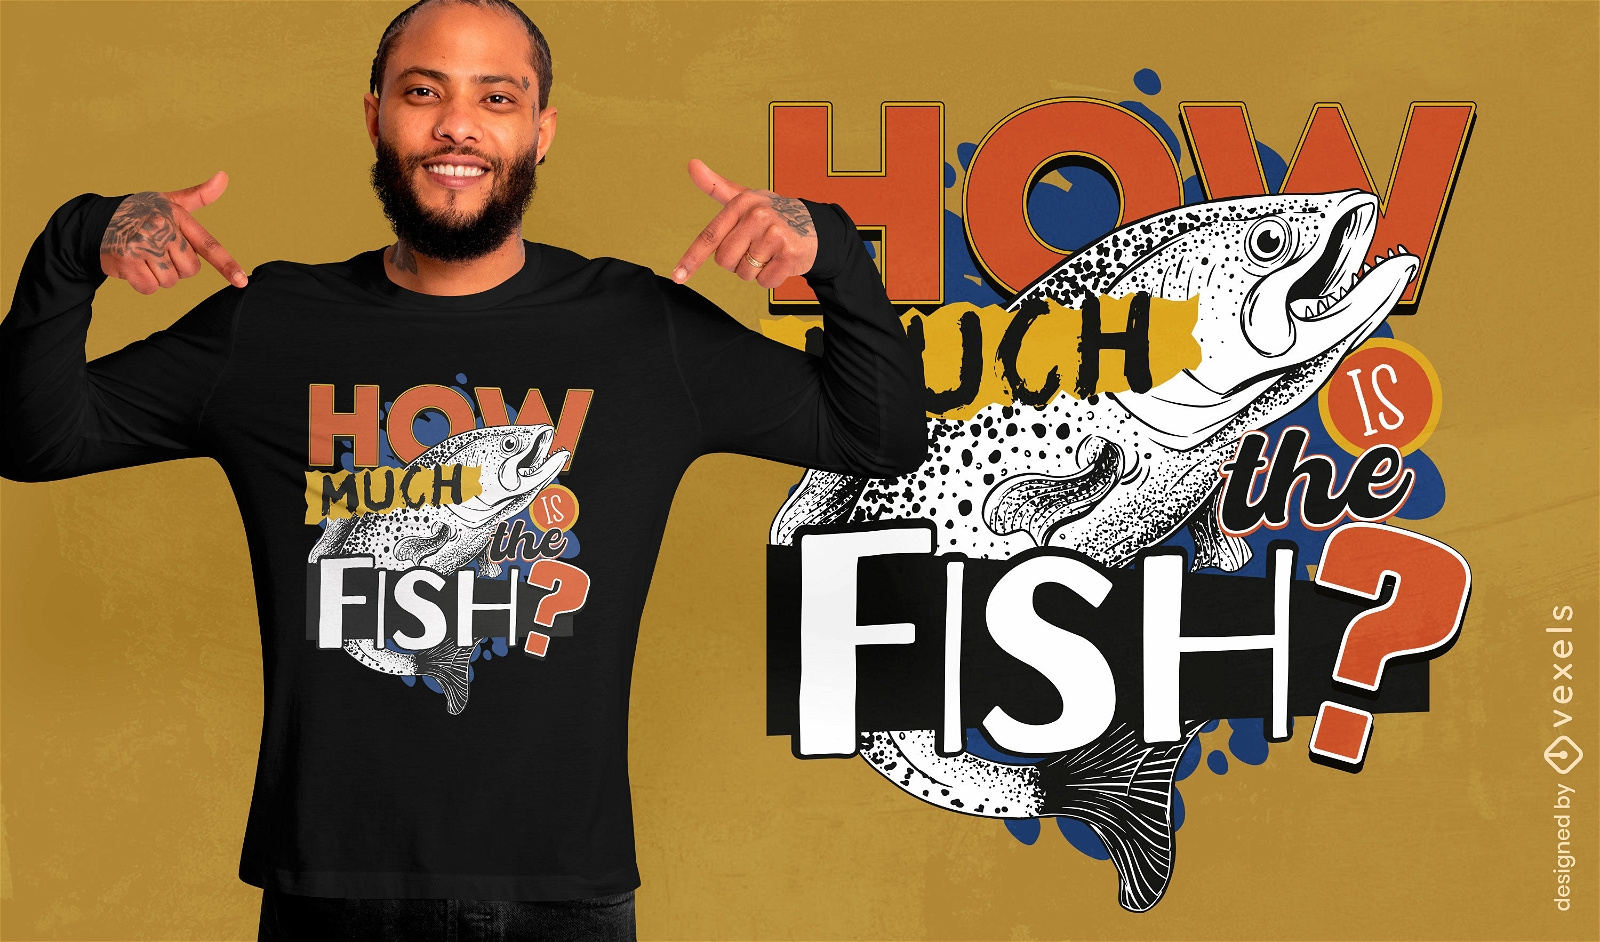 Dise?o de camiseta de pregunta de pescado.